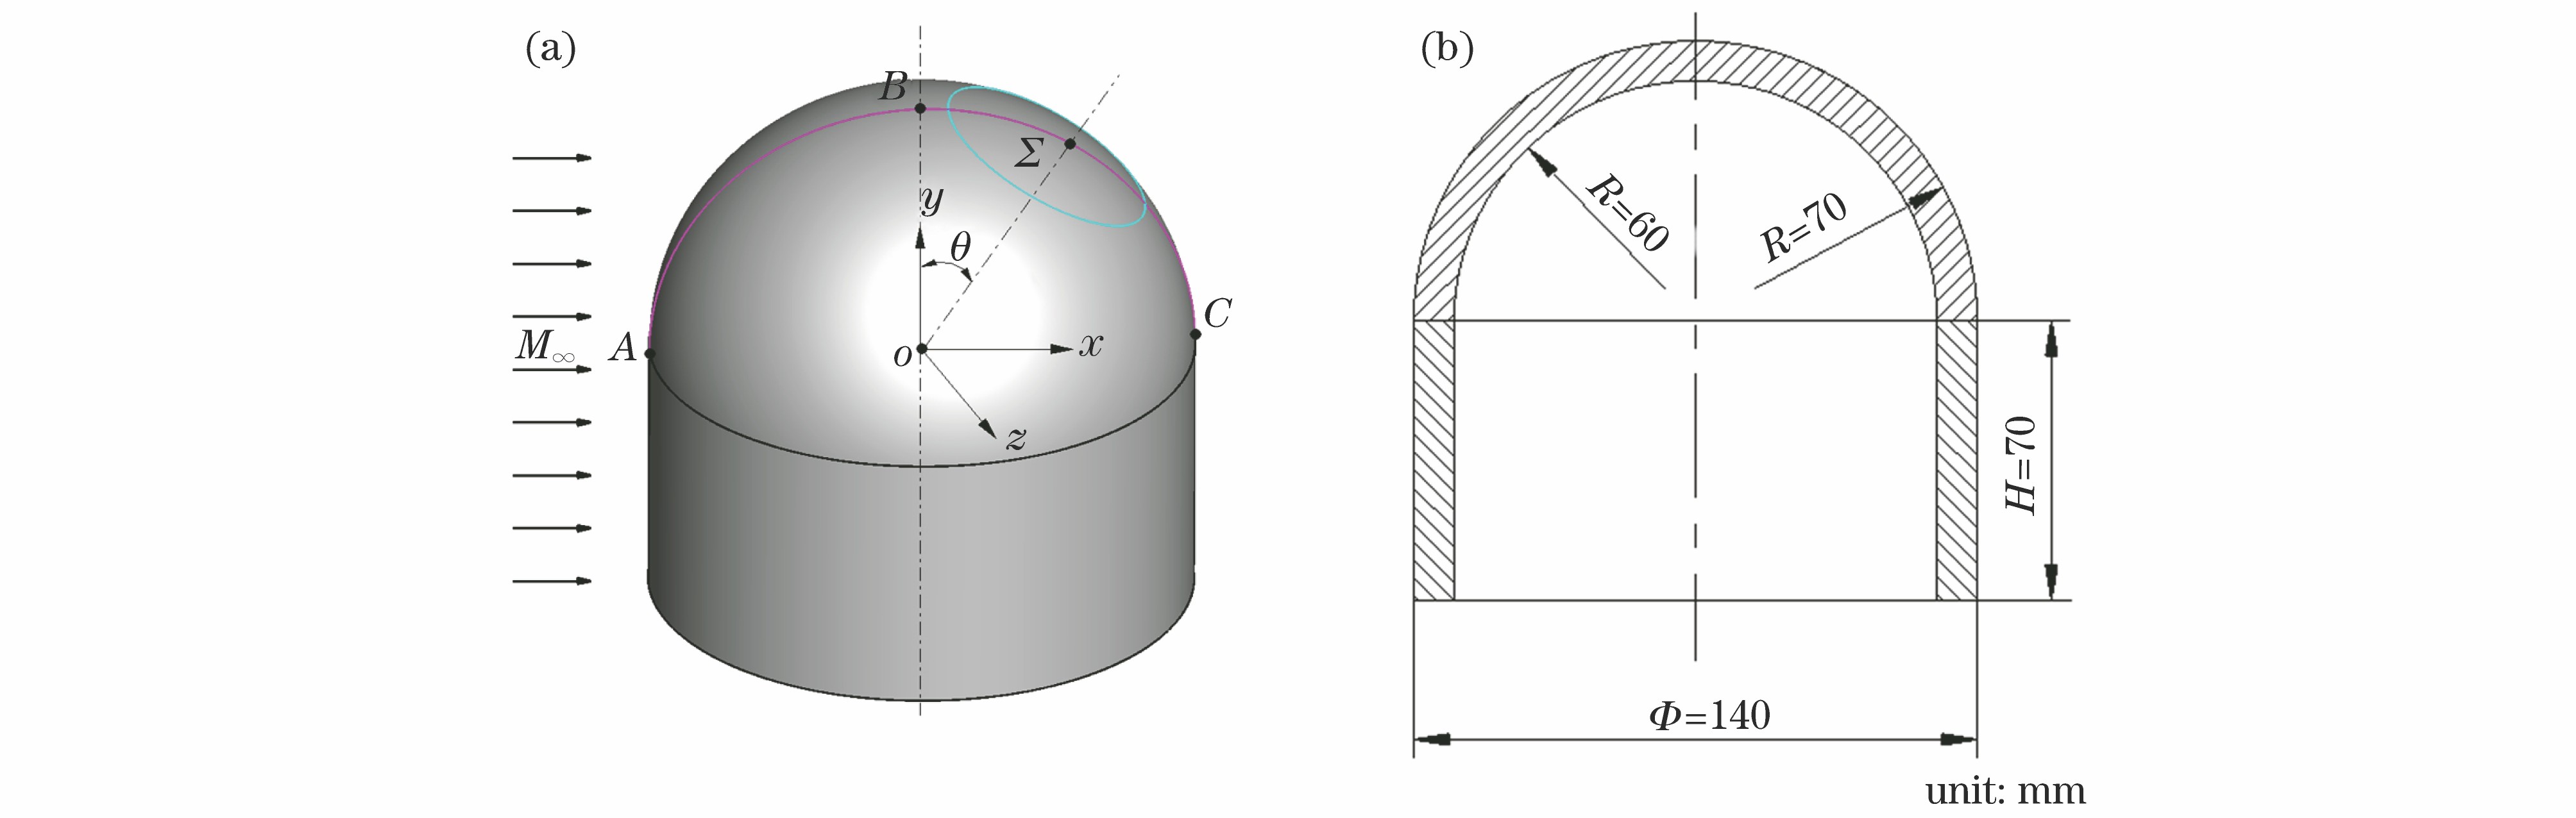 Turret model. (a) Model; (b) size